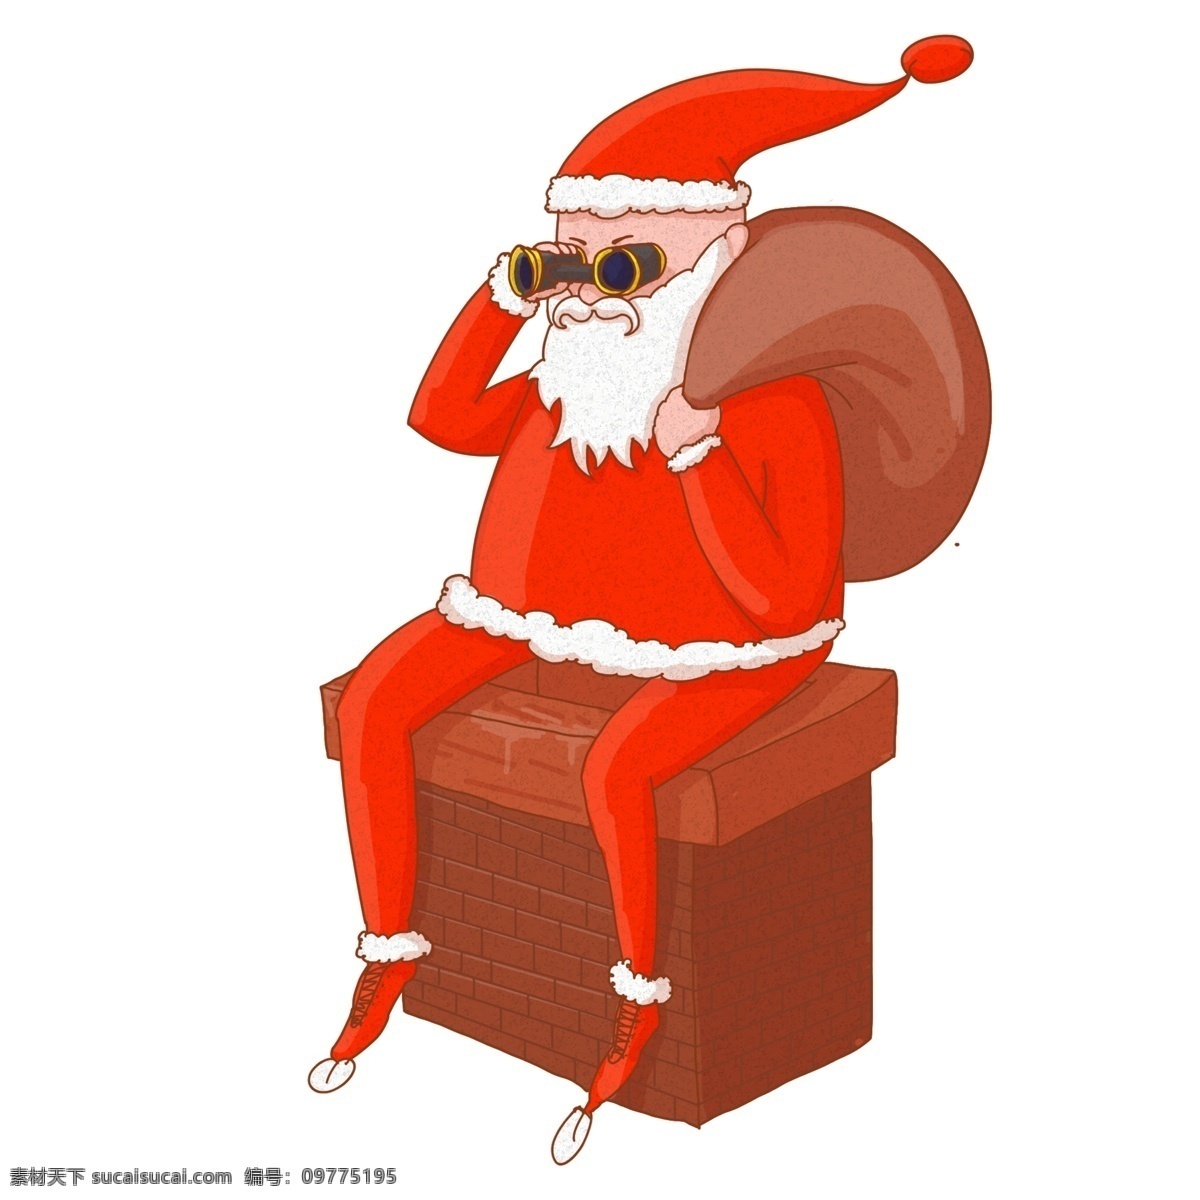 坐在 烟囱 上 圣诞老人 卡通 手绘 插画 圣诞节 圣诞狂欢 背包 带 墨镜